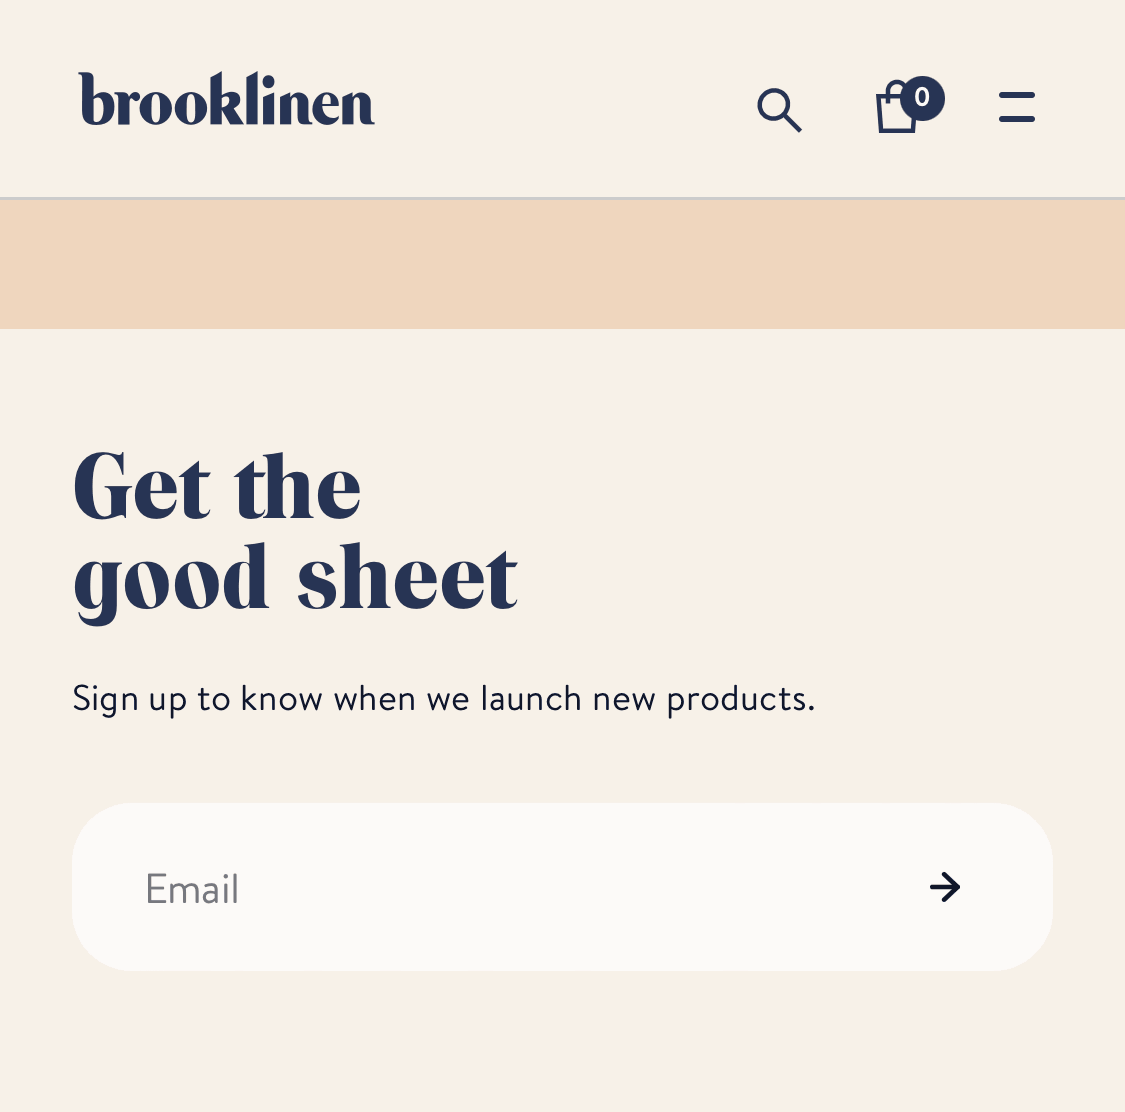 Closeup of “Get the good sheet” copywriting on Brooklinen’s website.